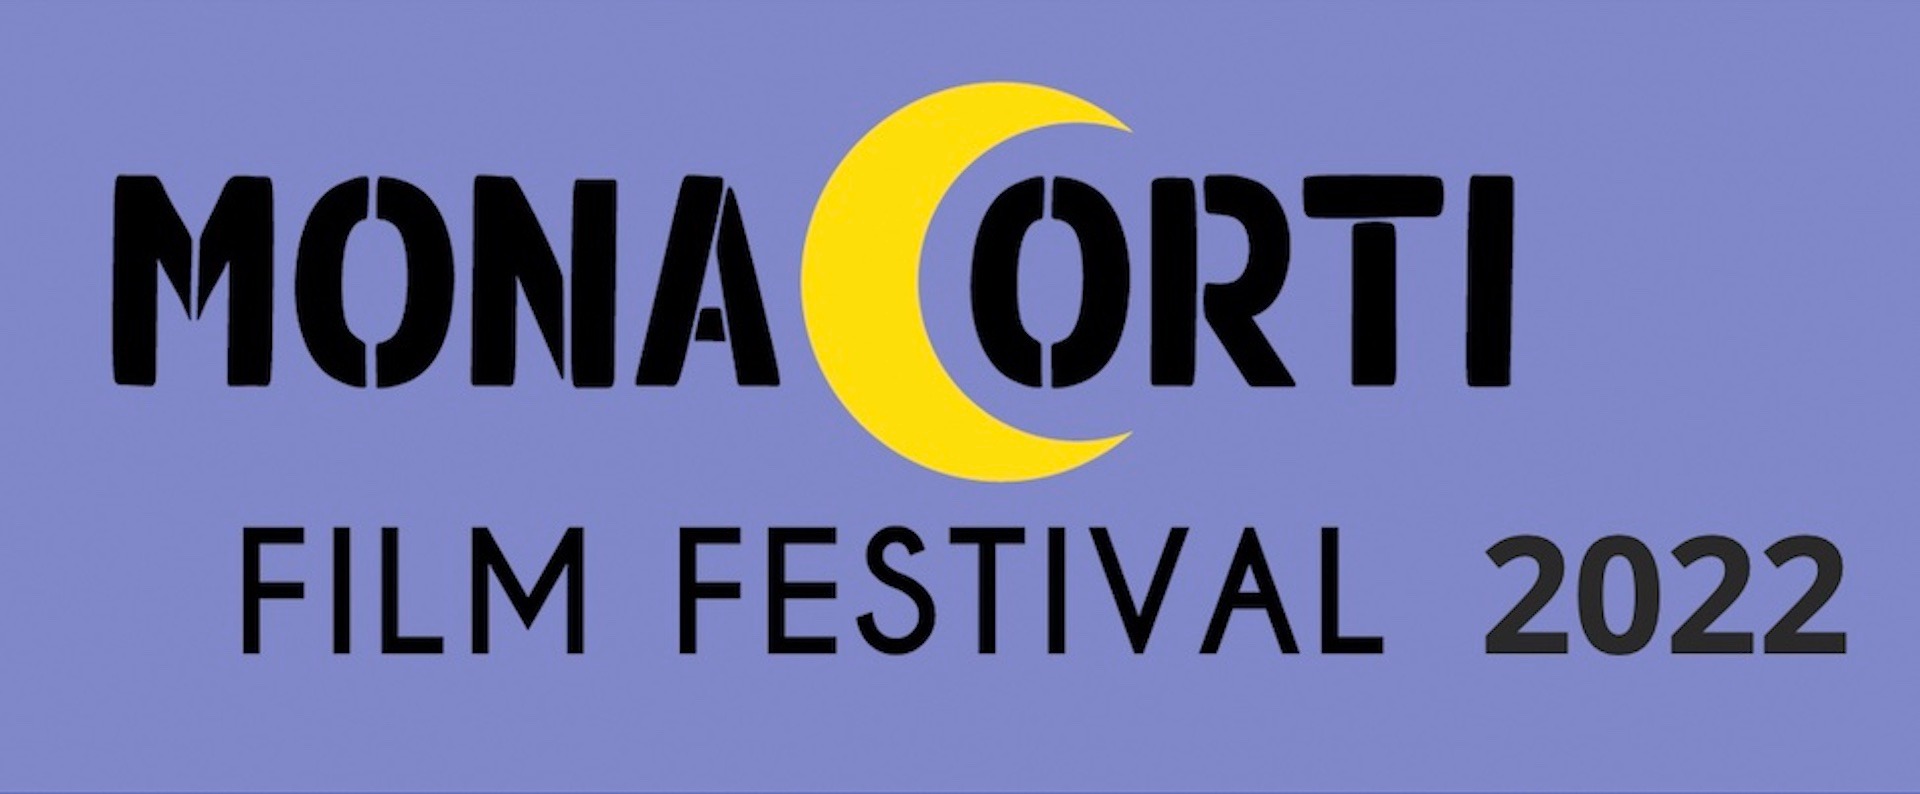 Prima edizione per il MonaCorti Film Festival